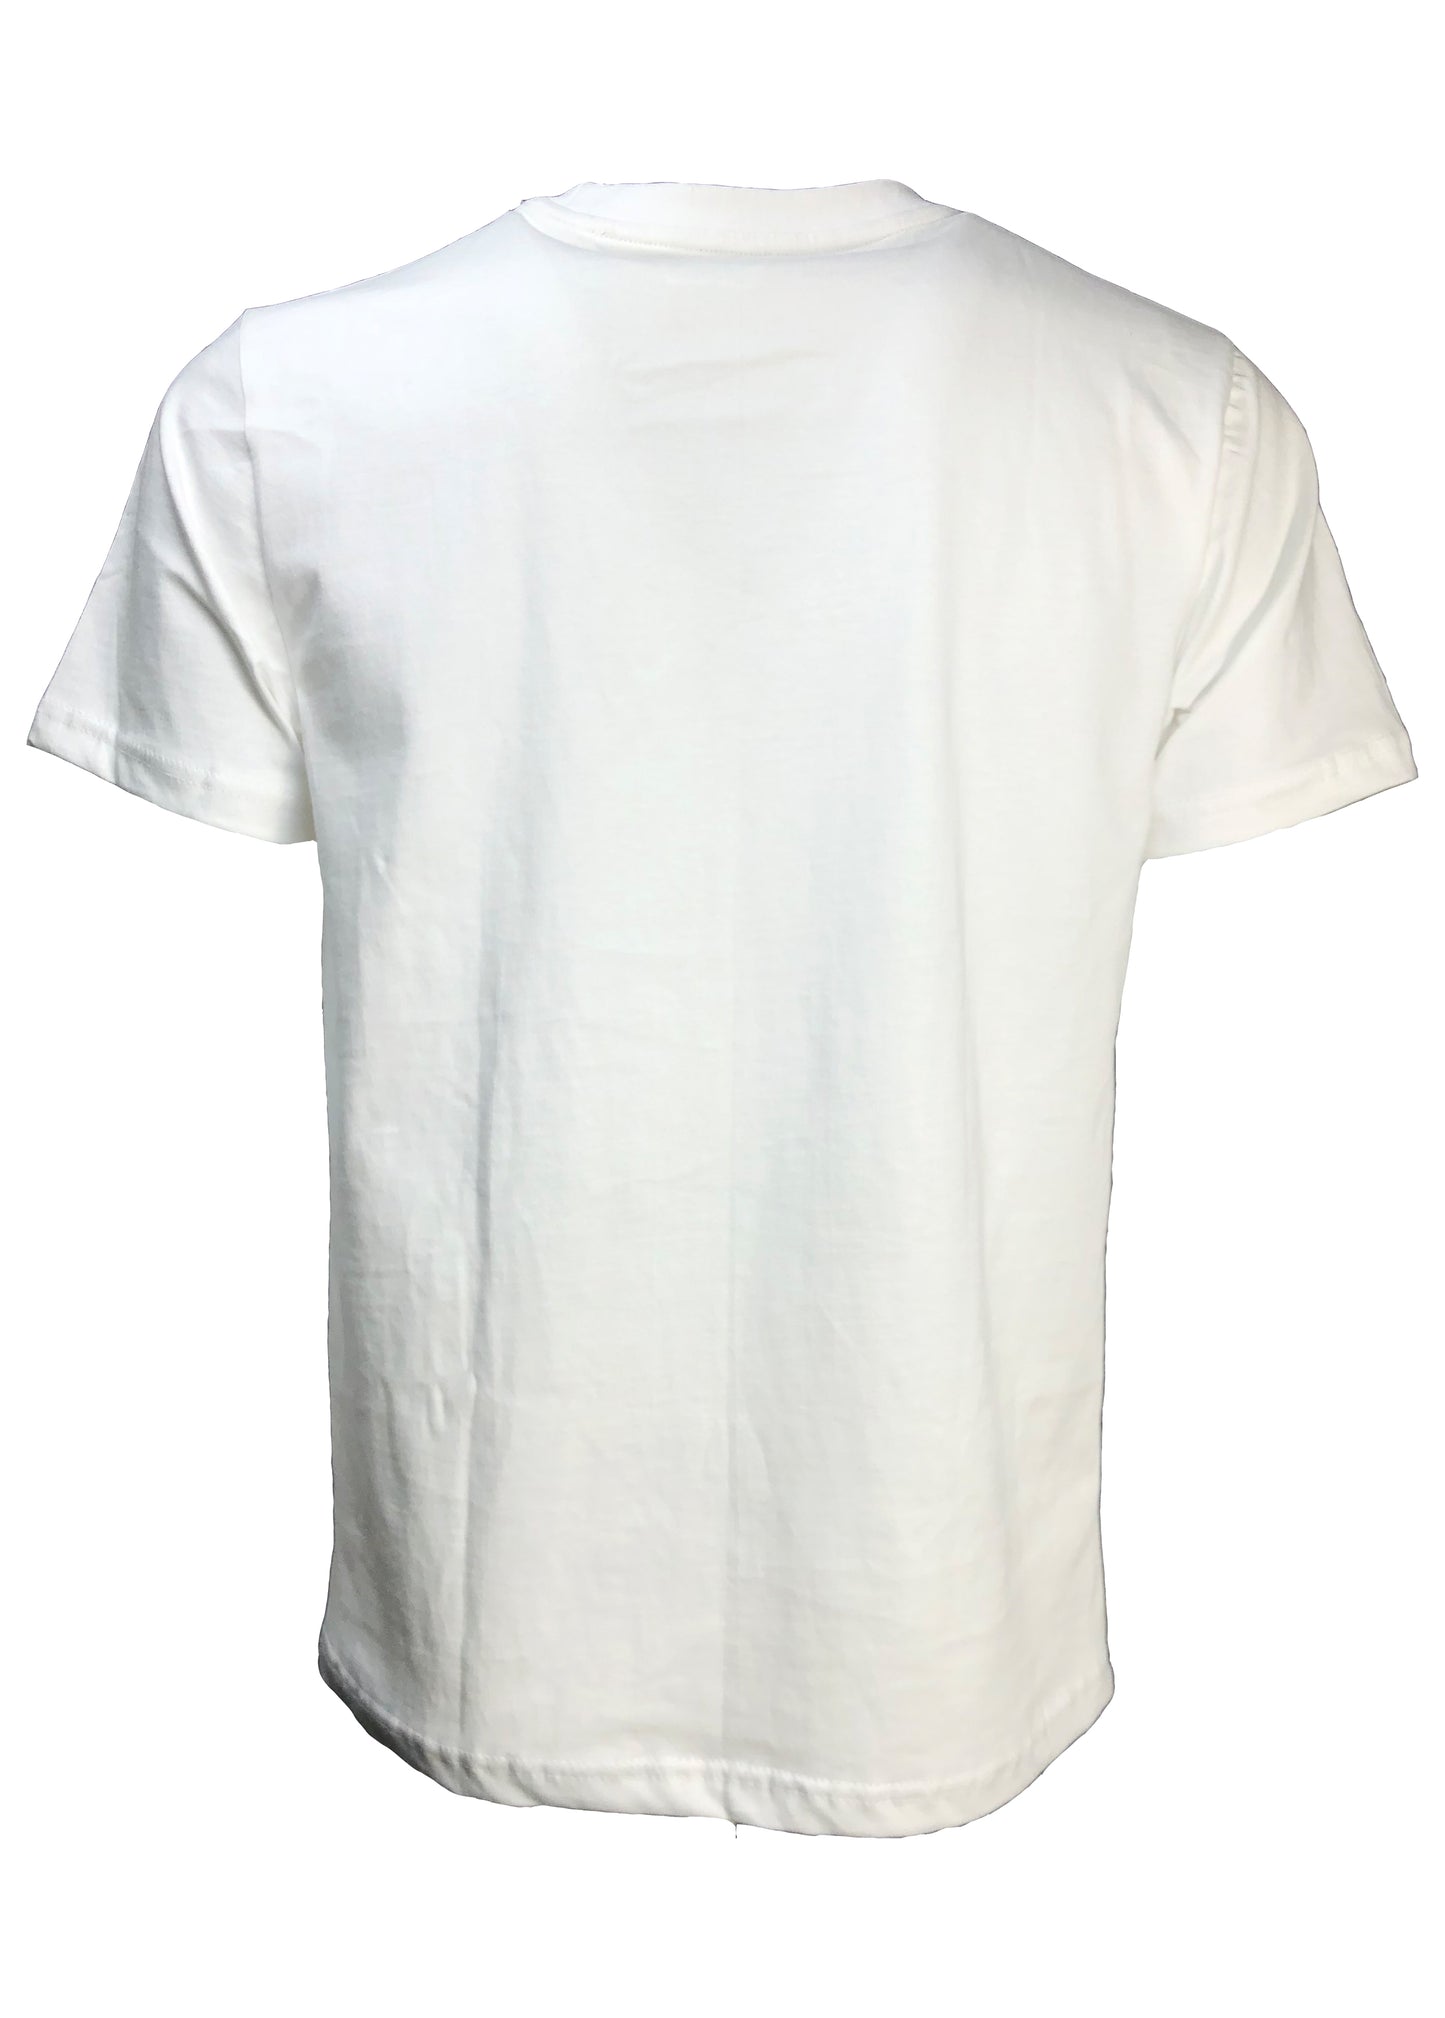 White Shirt Camo